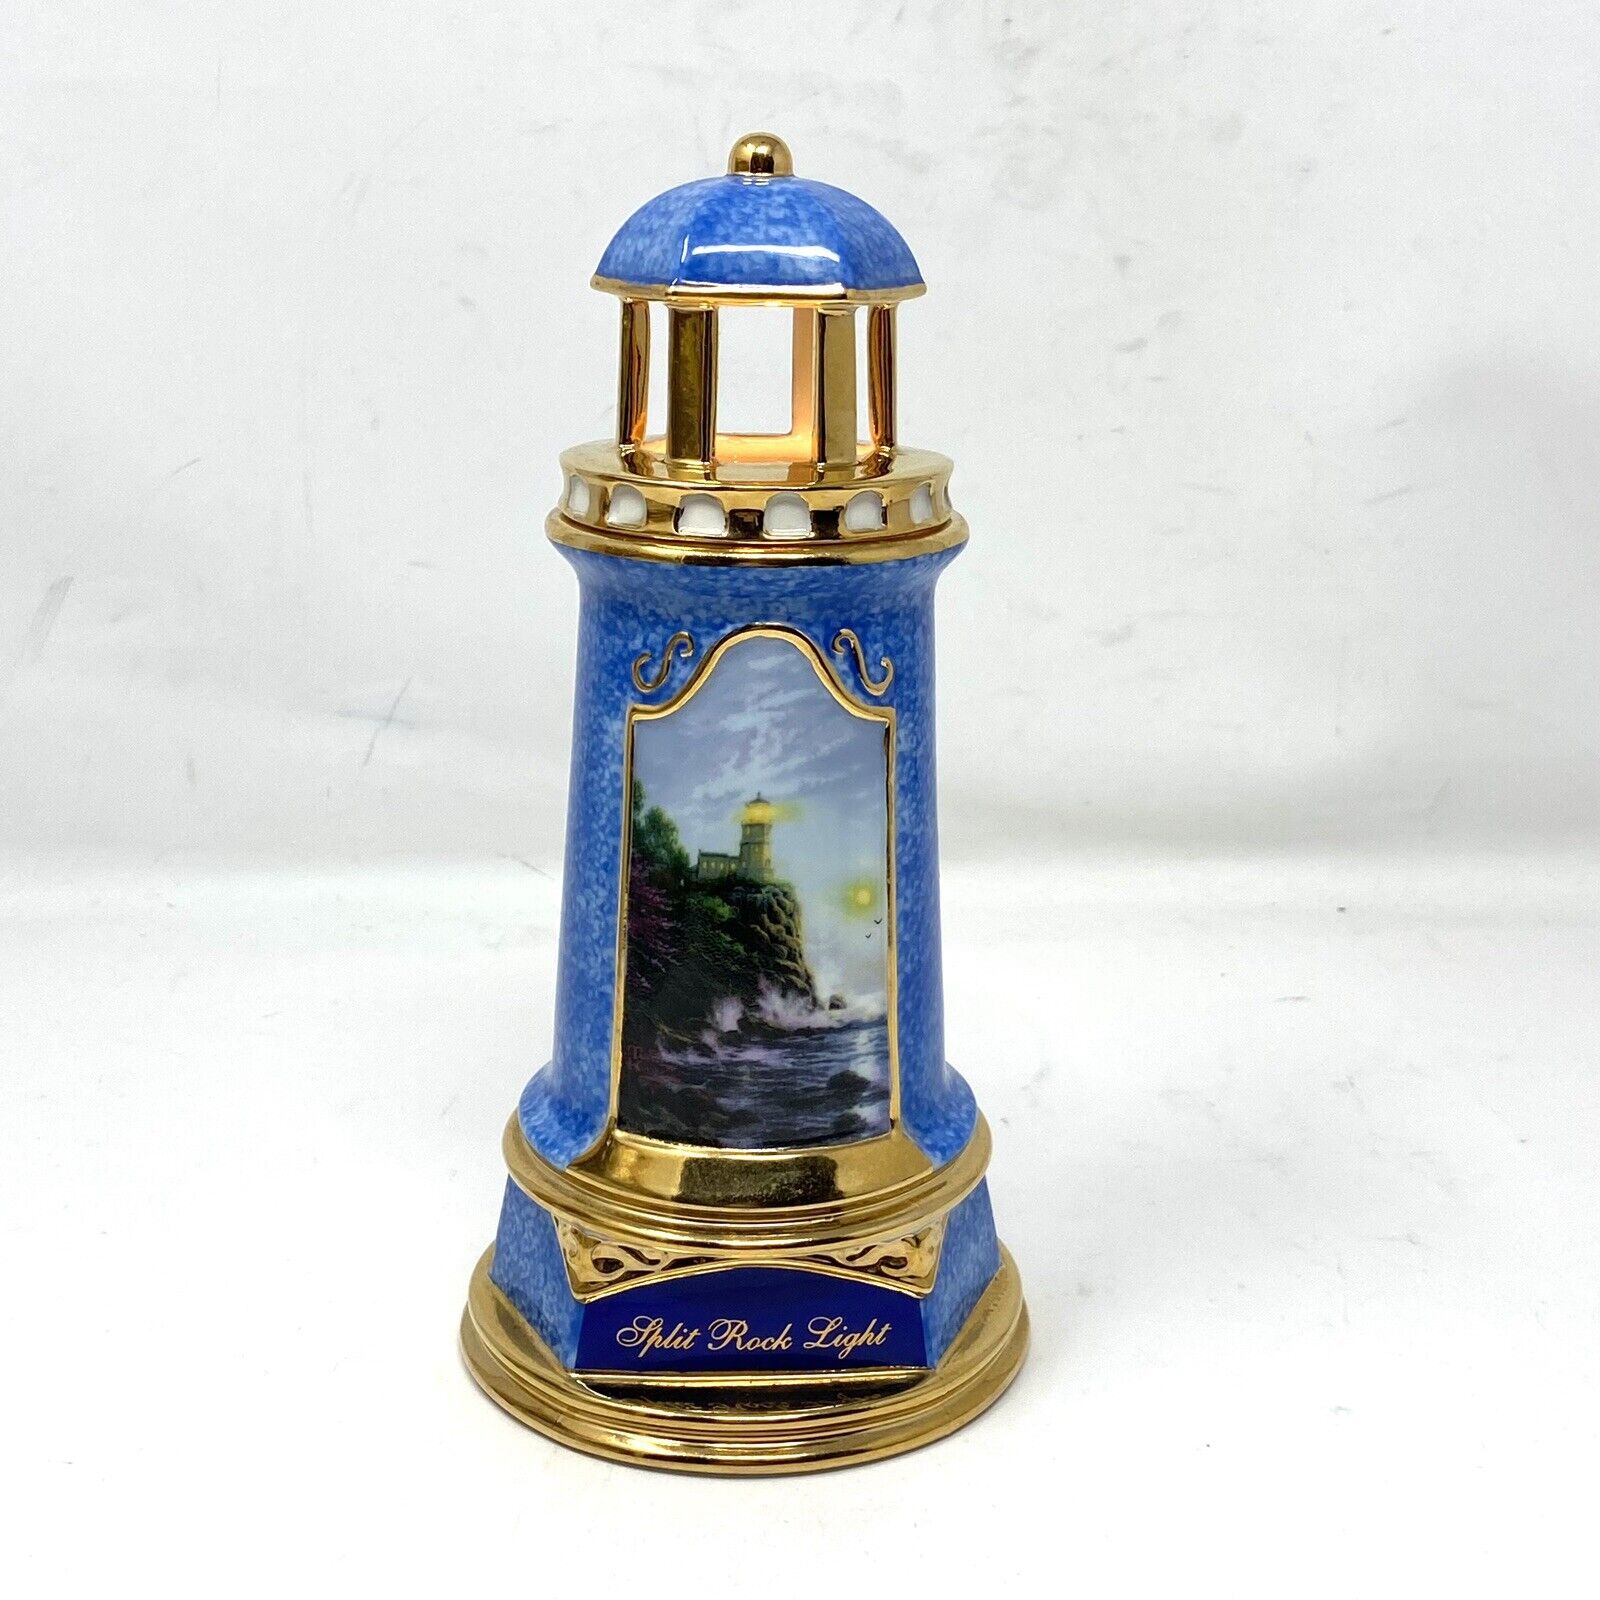 Thomas Kinkade “Split Rock Light” Lighted Porcelain Lighthouse